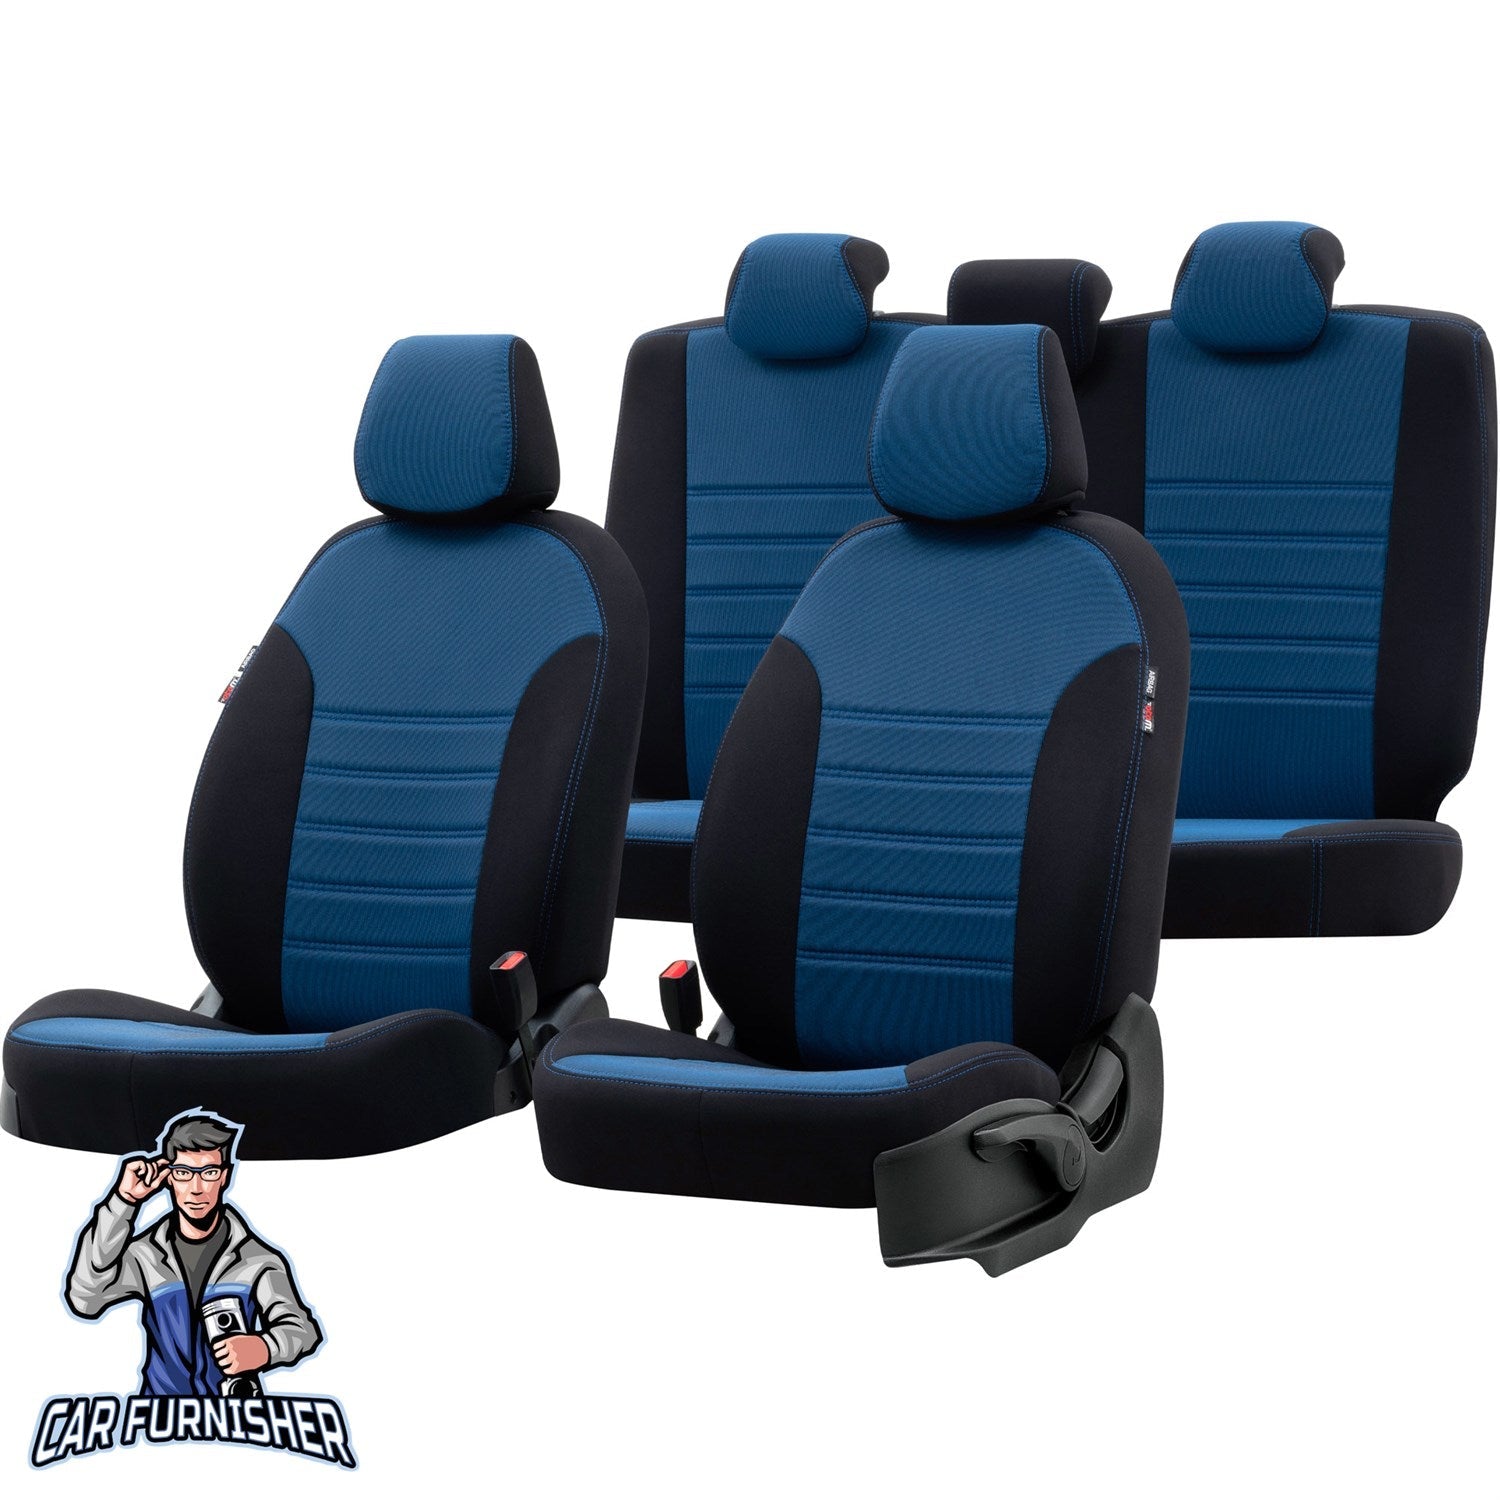 Volkswagen Passat Seat Cover Original Jacquard Design Blue Jacquard Fabric